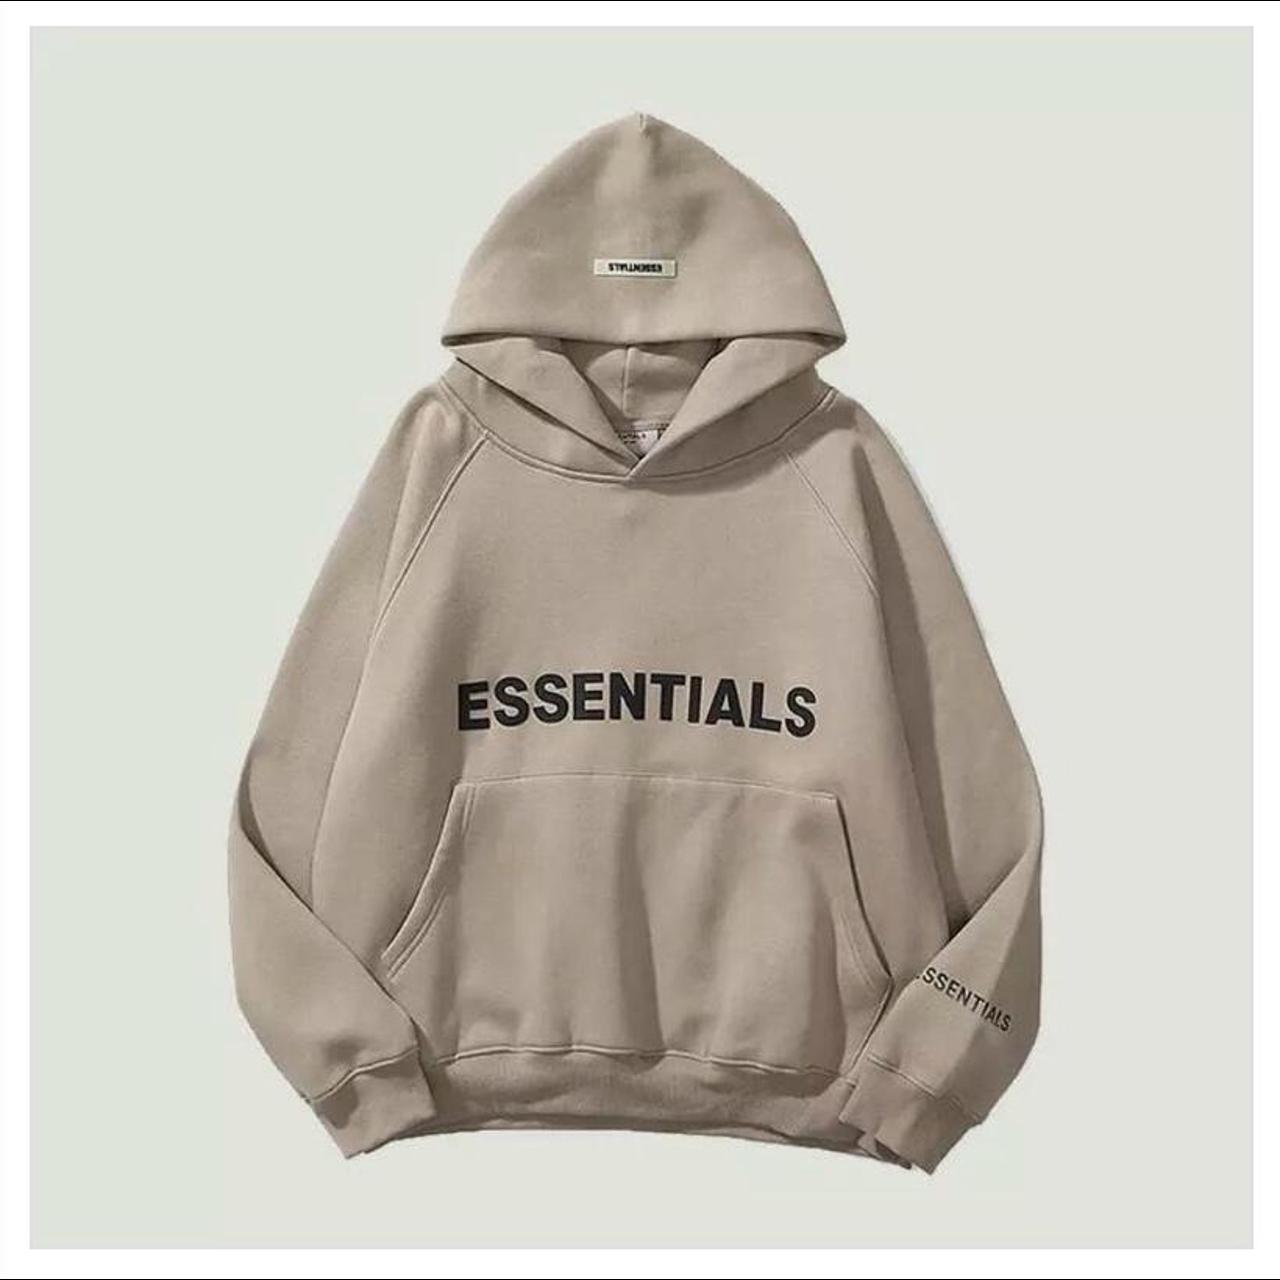 Essentials hoodie - Depop